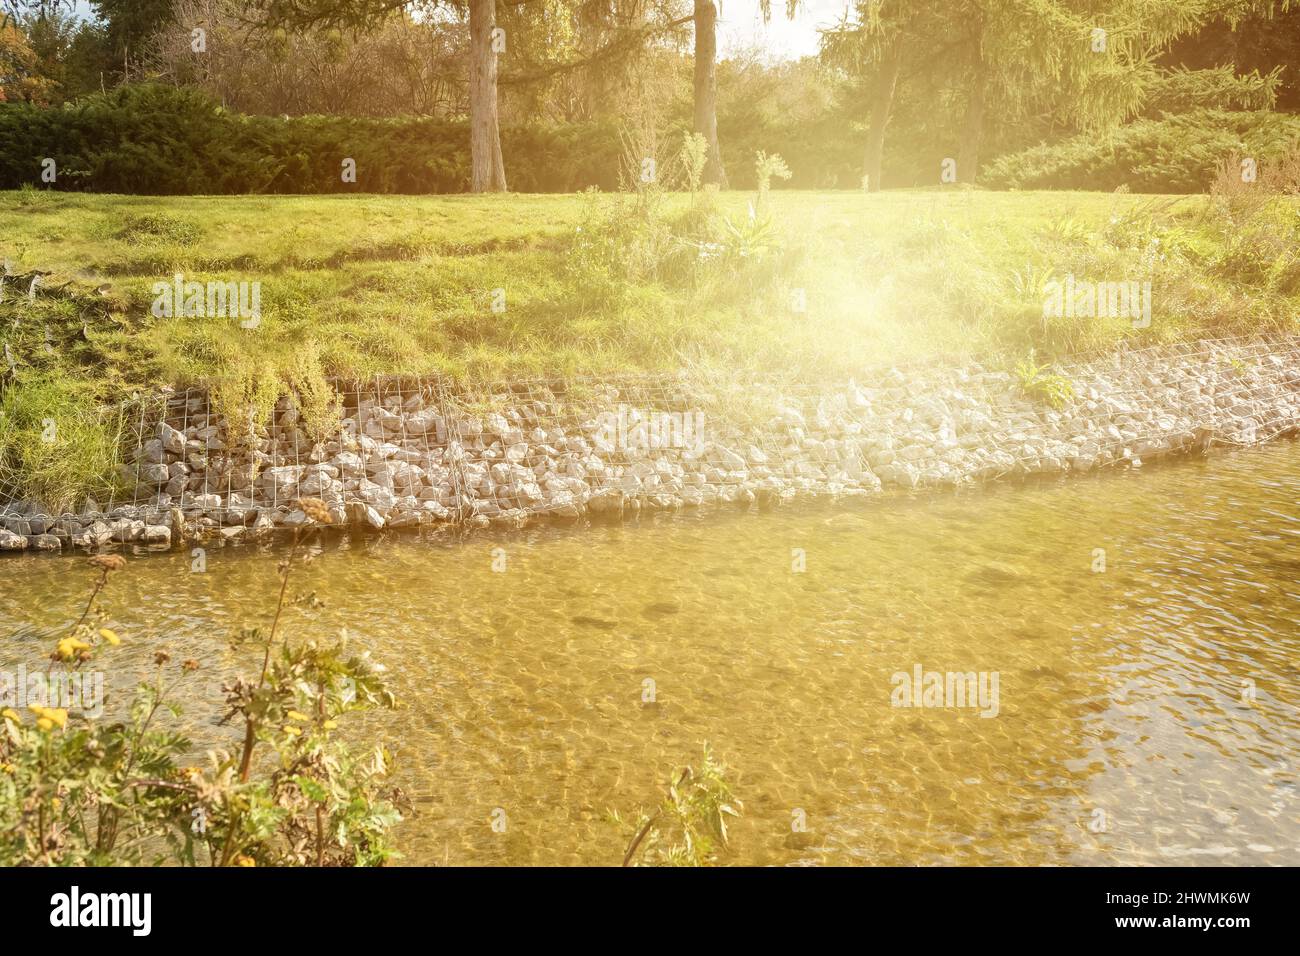 Stärkung der Ufer des Flusses, Mesh und Steine. Landschaft Flussufer und große Steine mit Metallgeflecht. Sonnenblendung Stockfoto